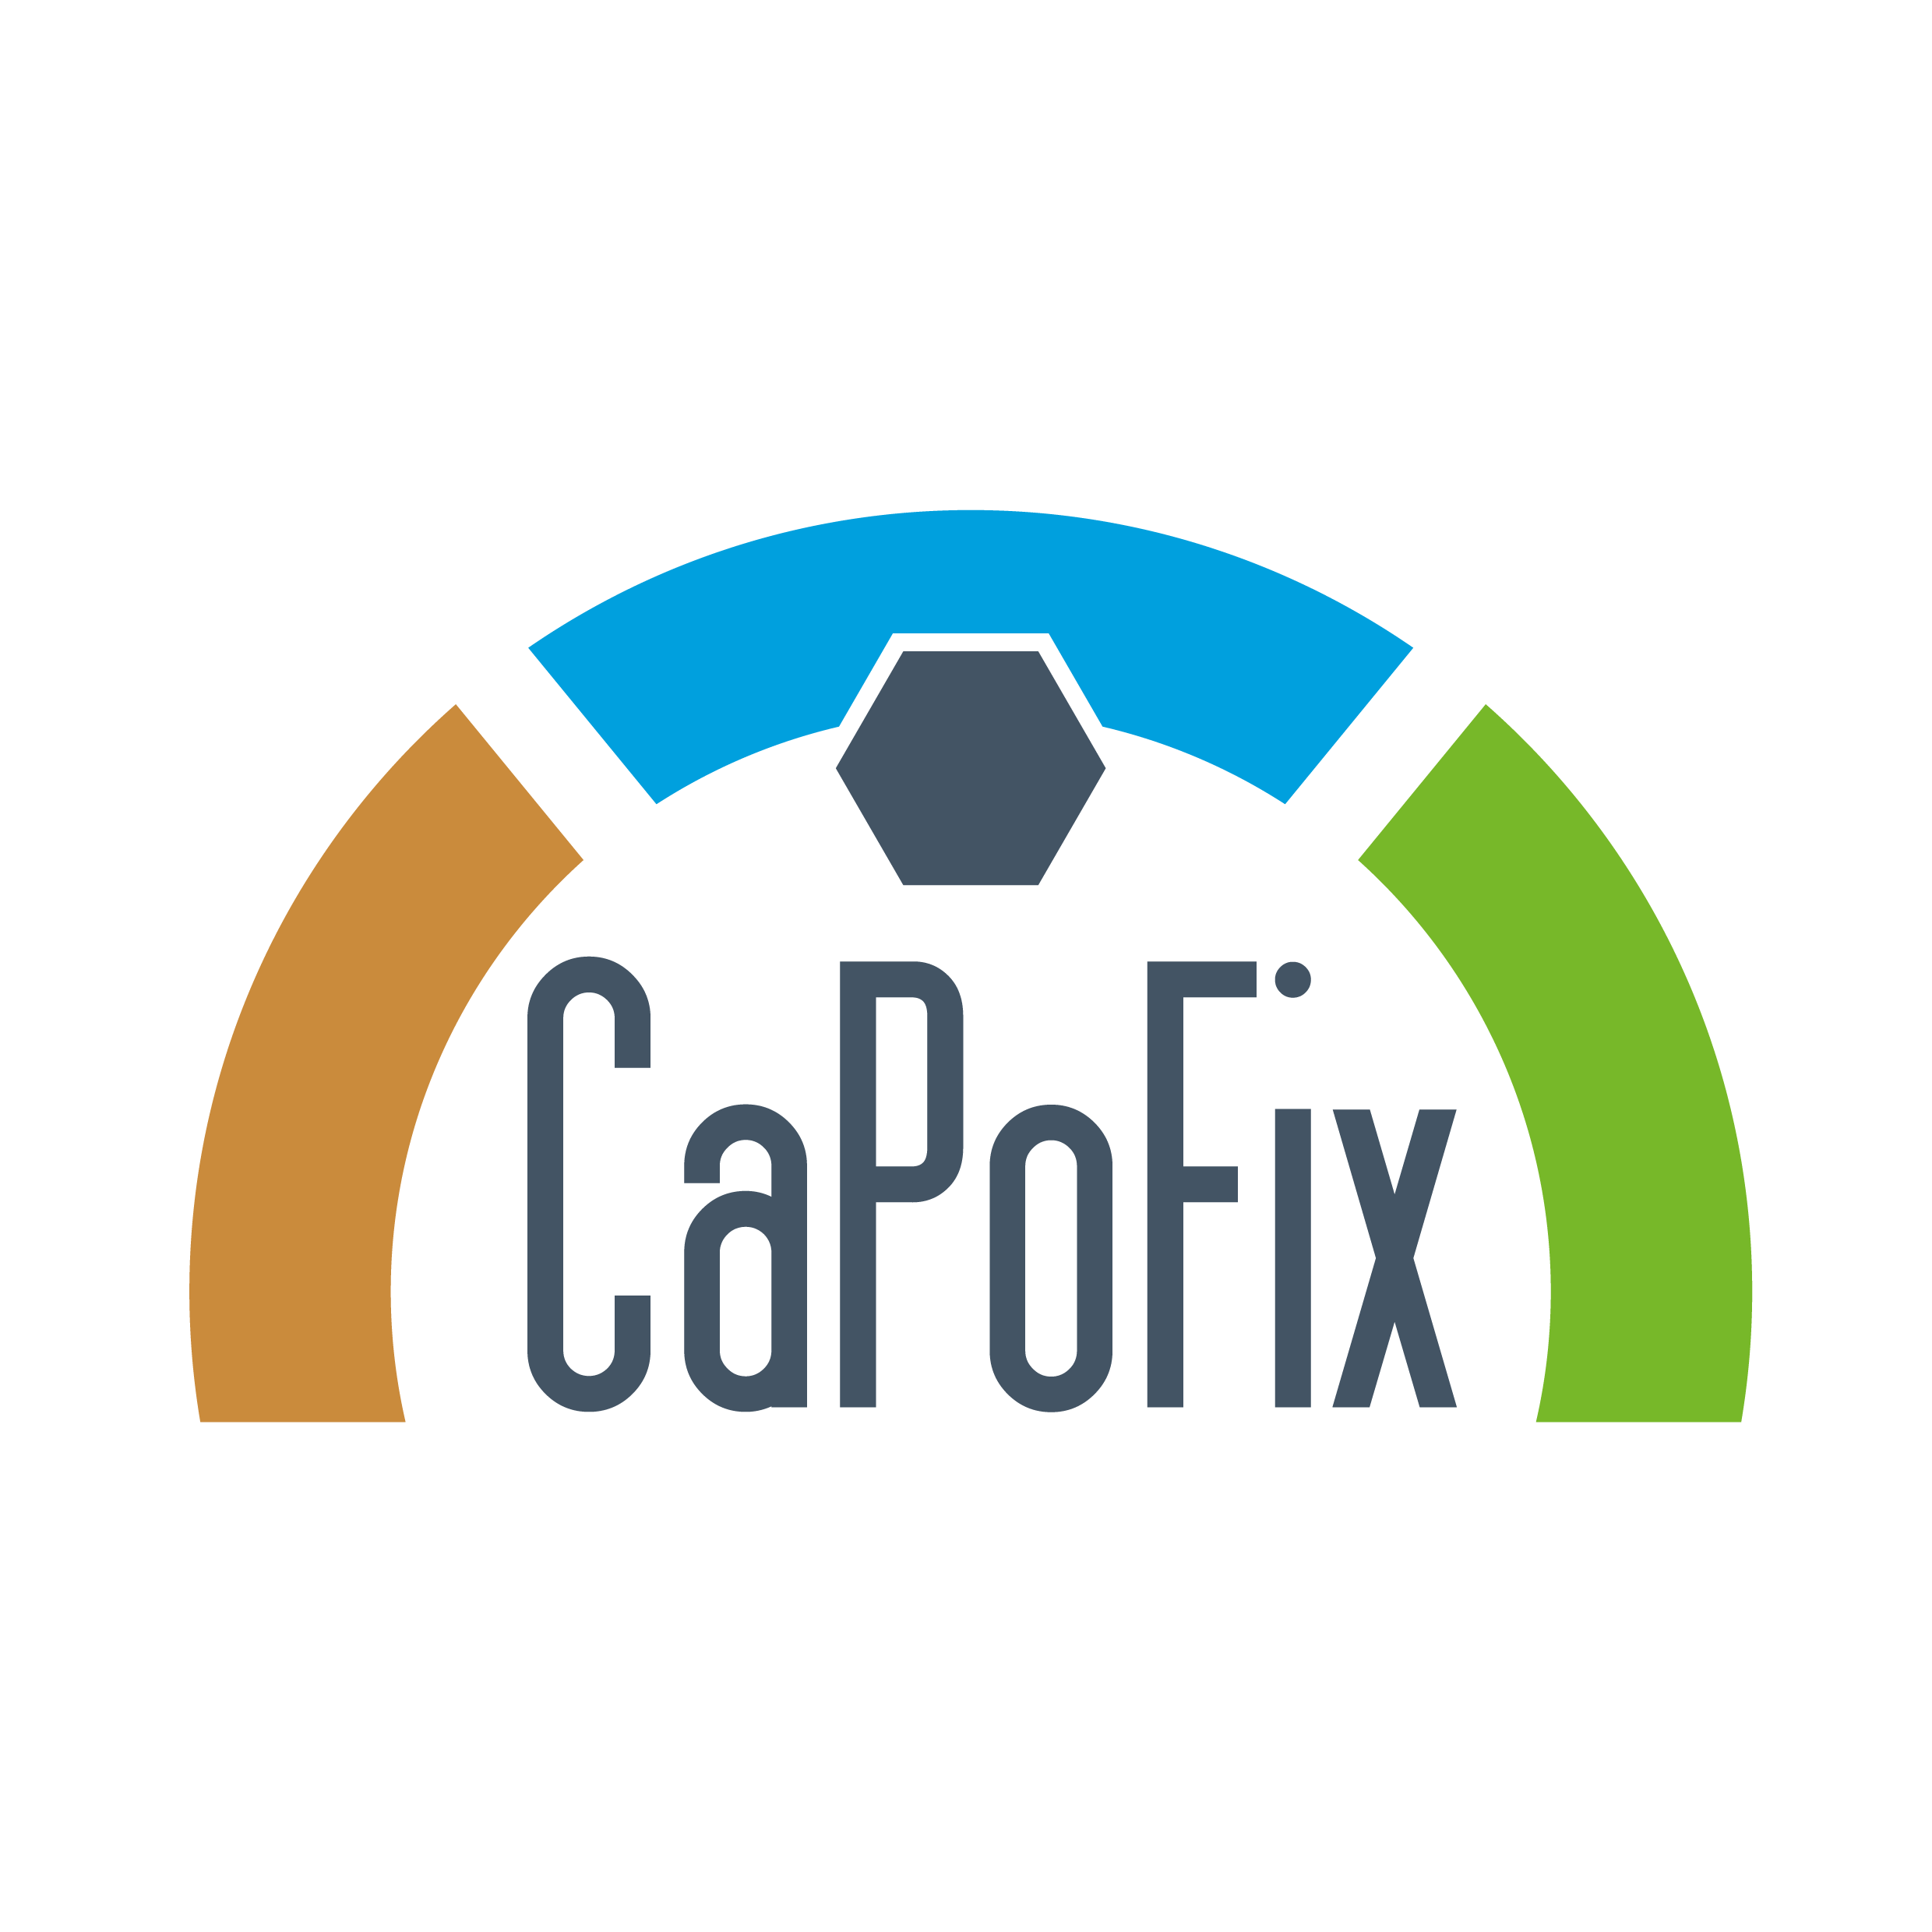 Capofix - Der ökologische Baustein für Ihren Garten